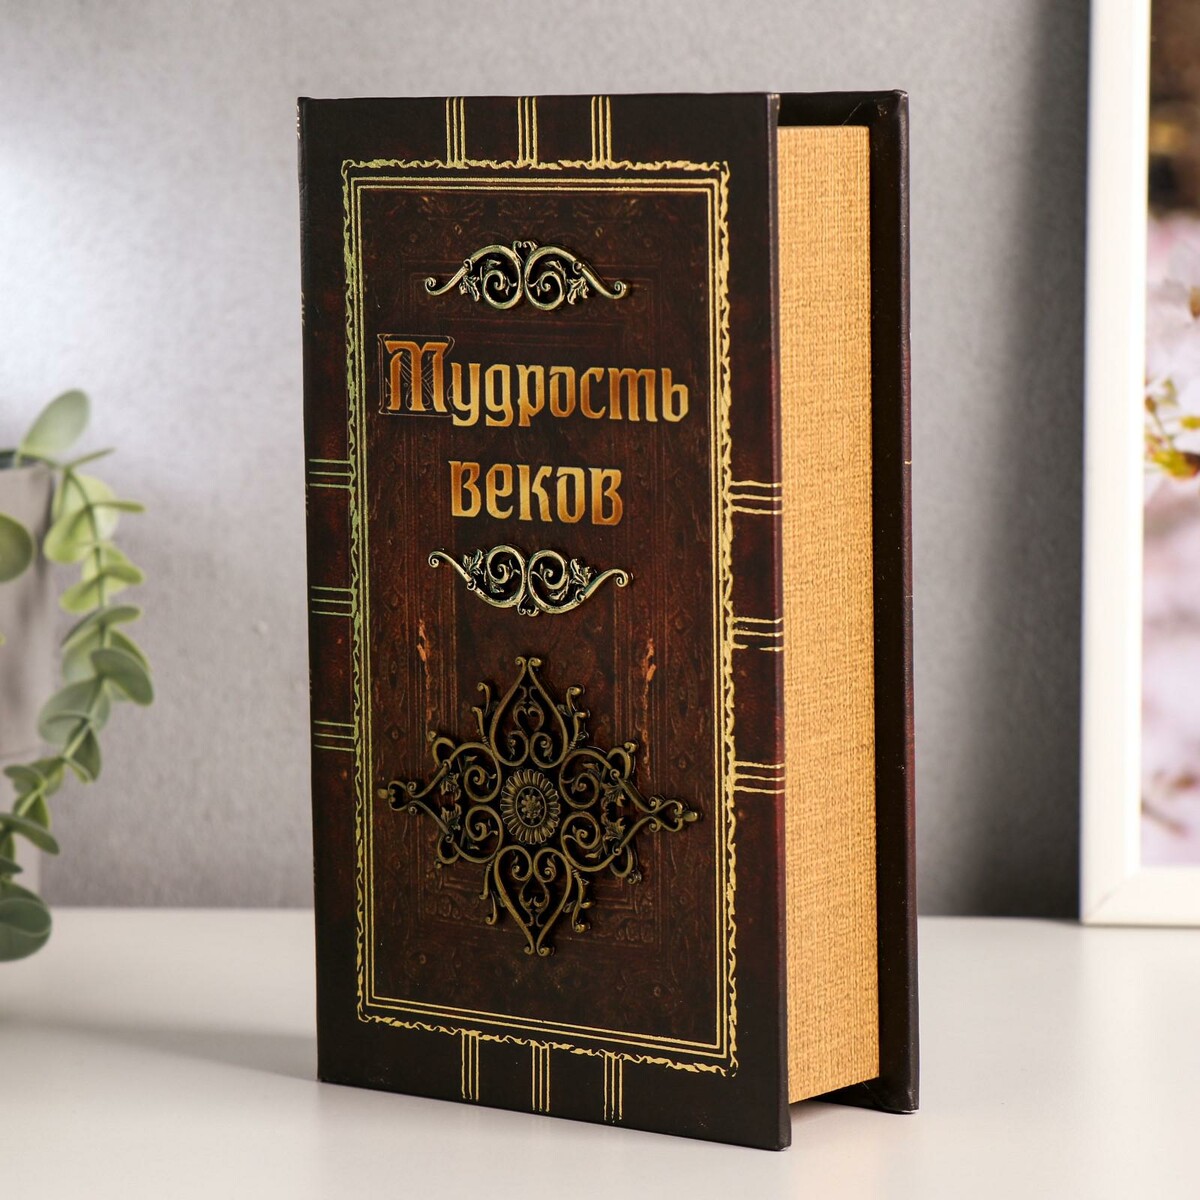 Черное дерево книга. Шапошникова мудрость веков книга. Старий кожа для книга.